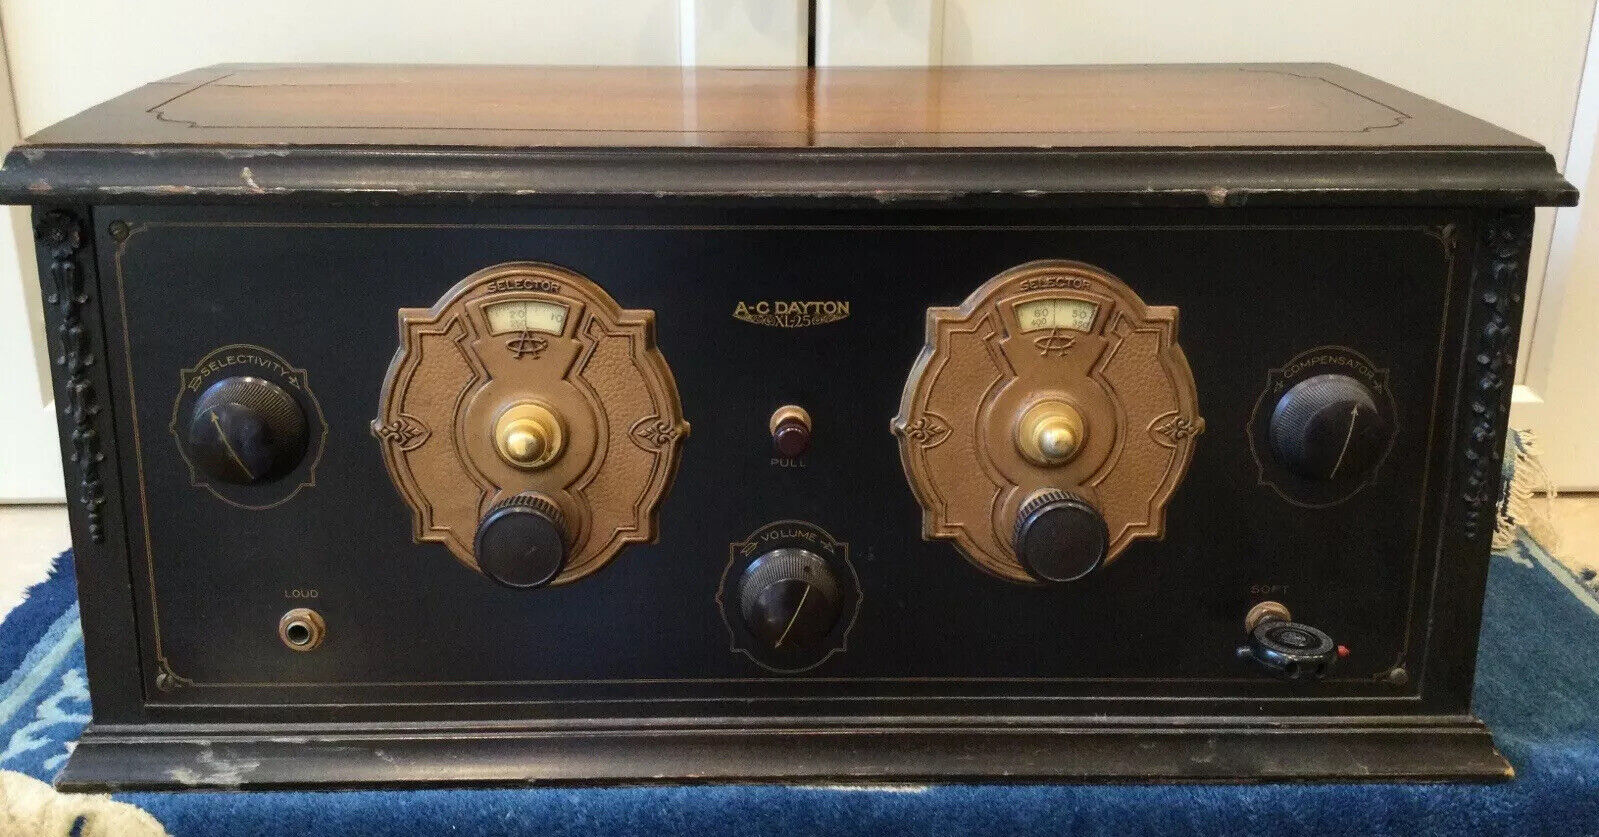 AC Dayton XL 25 antique tube radio / Receiver  table top 1926